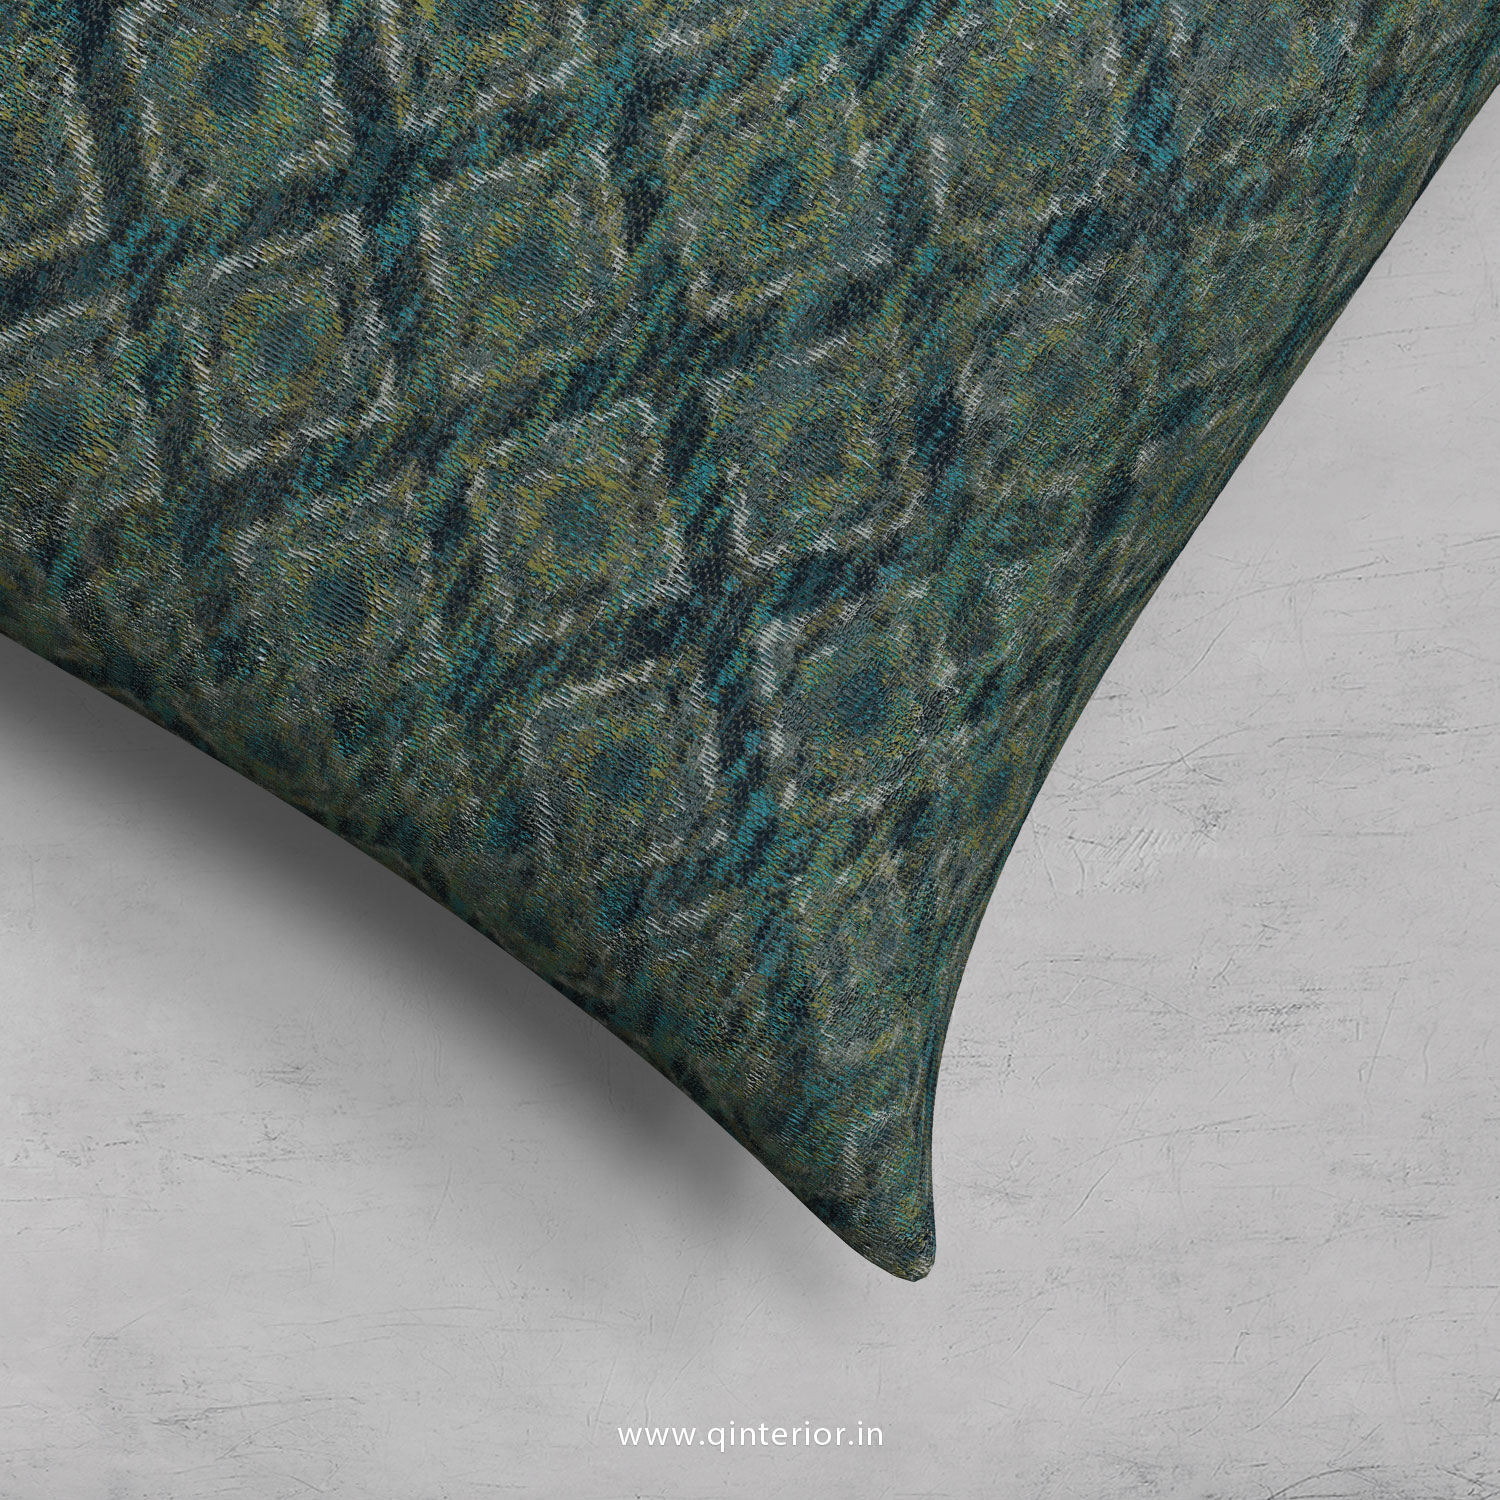 Cushion With Cushion Cover in Jacquard- CUS001 JQ26